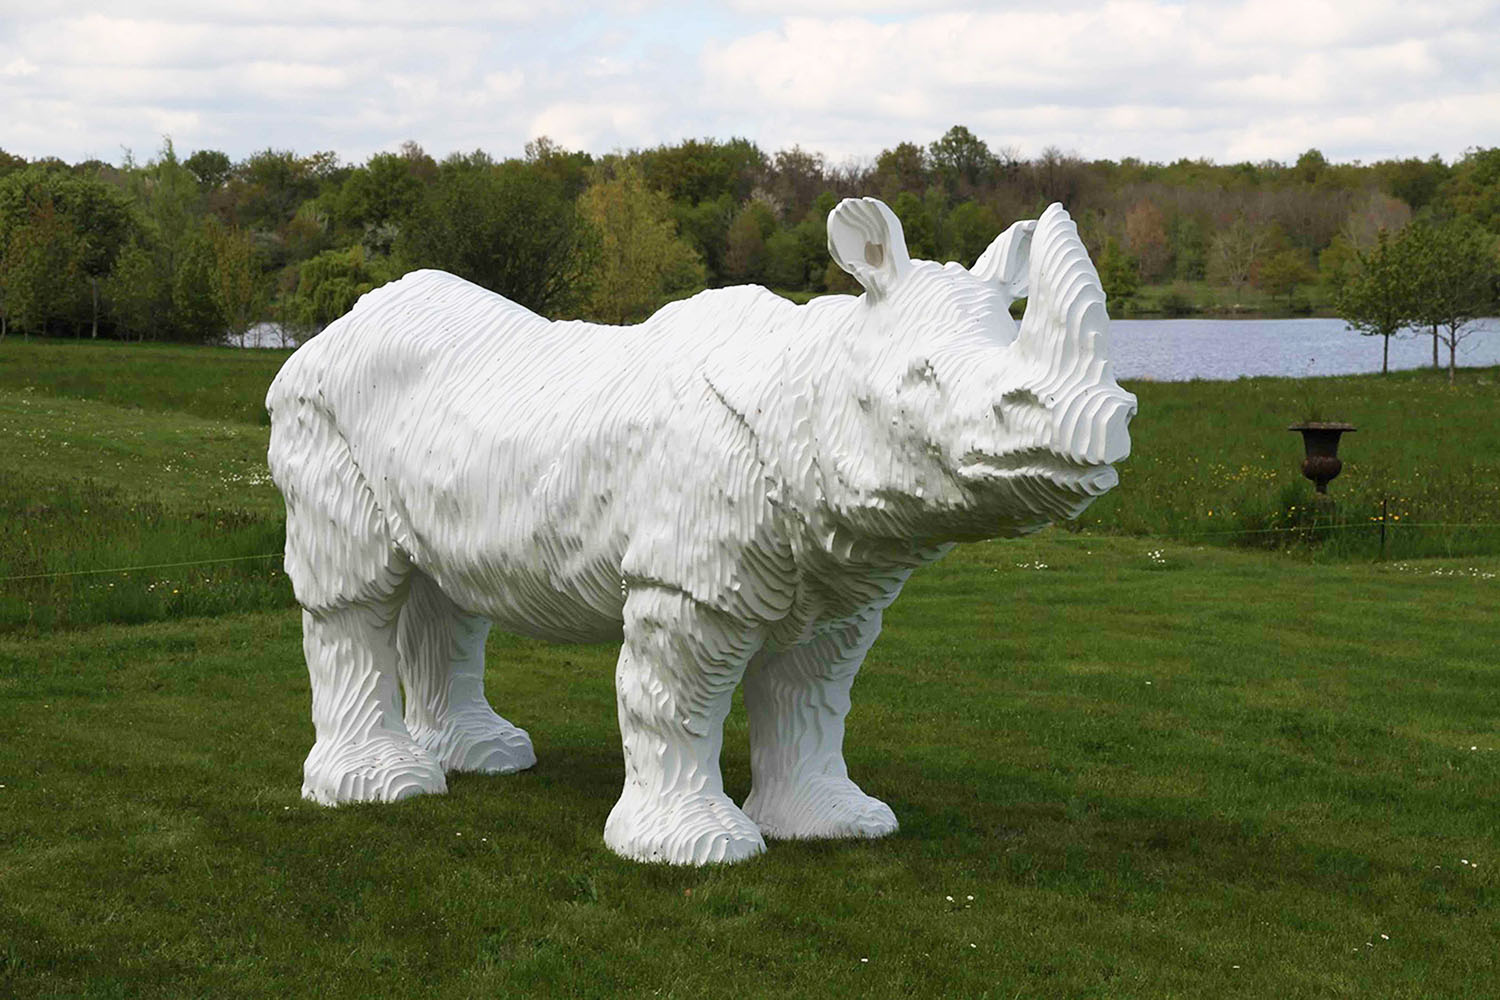 biennale-en-sologne-2017-jardin-des-sculptures-michel-audiard-le-rhinoceros